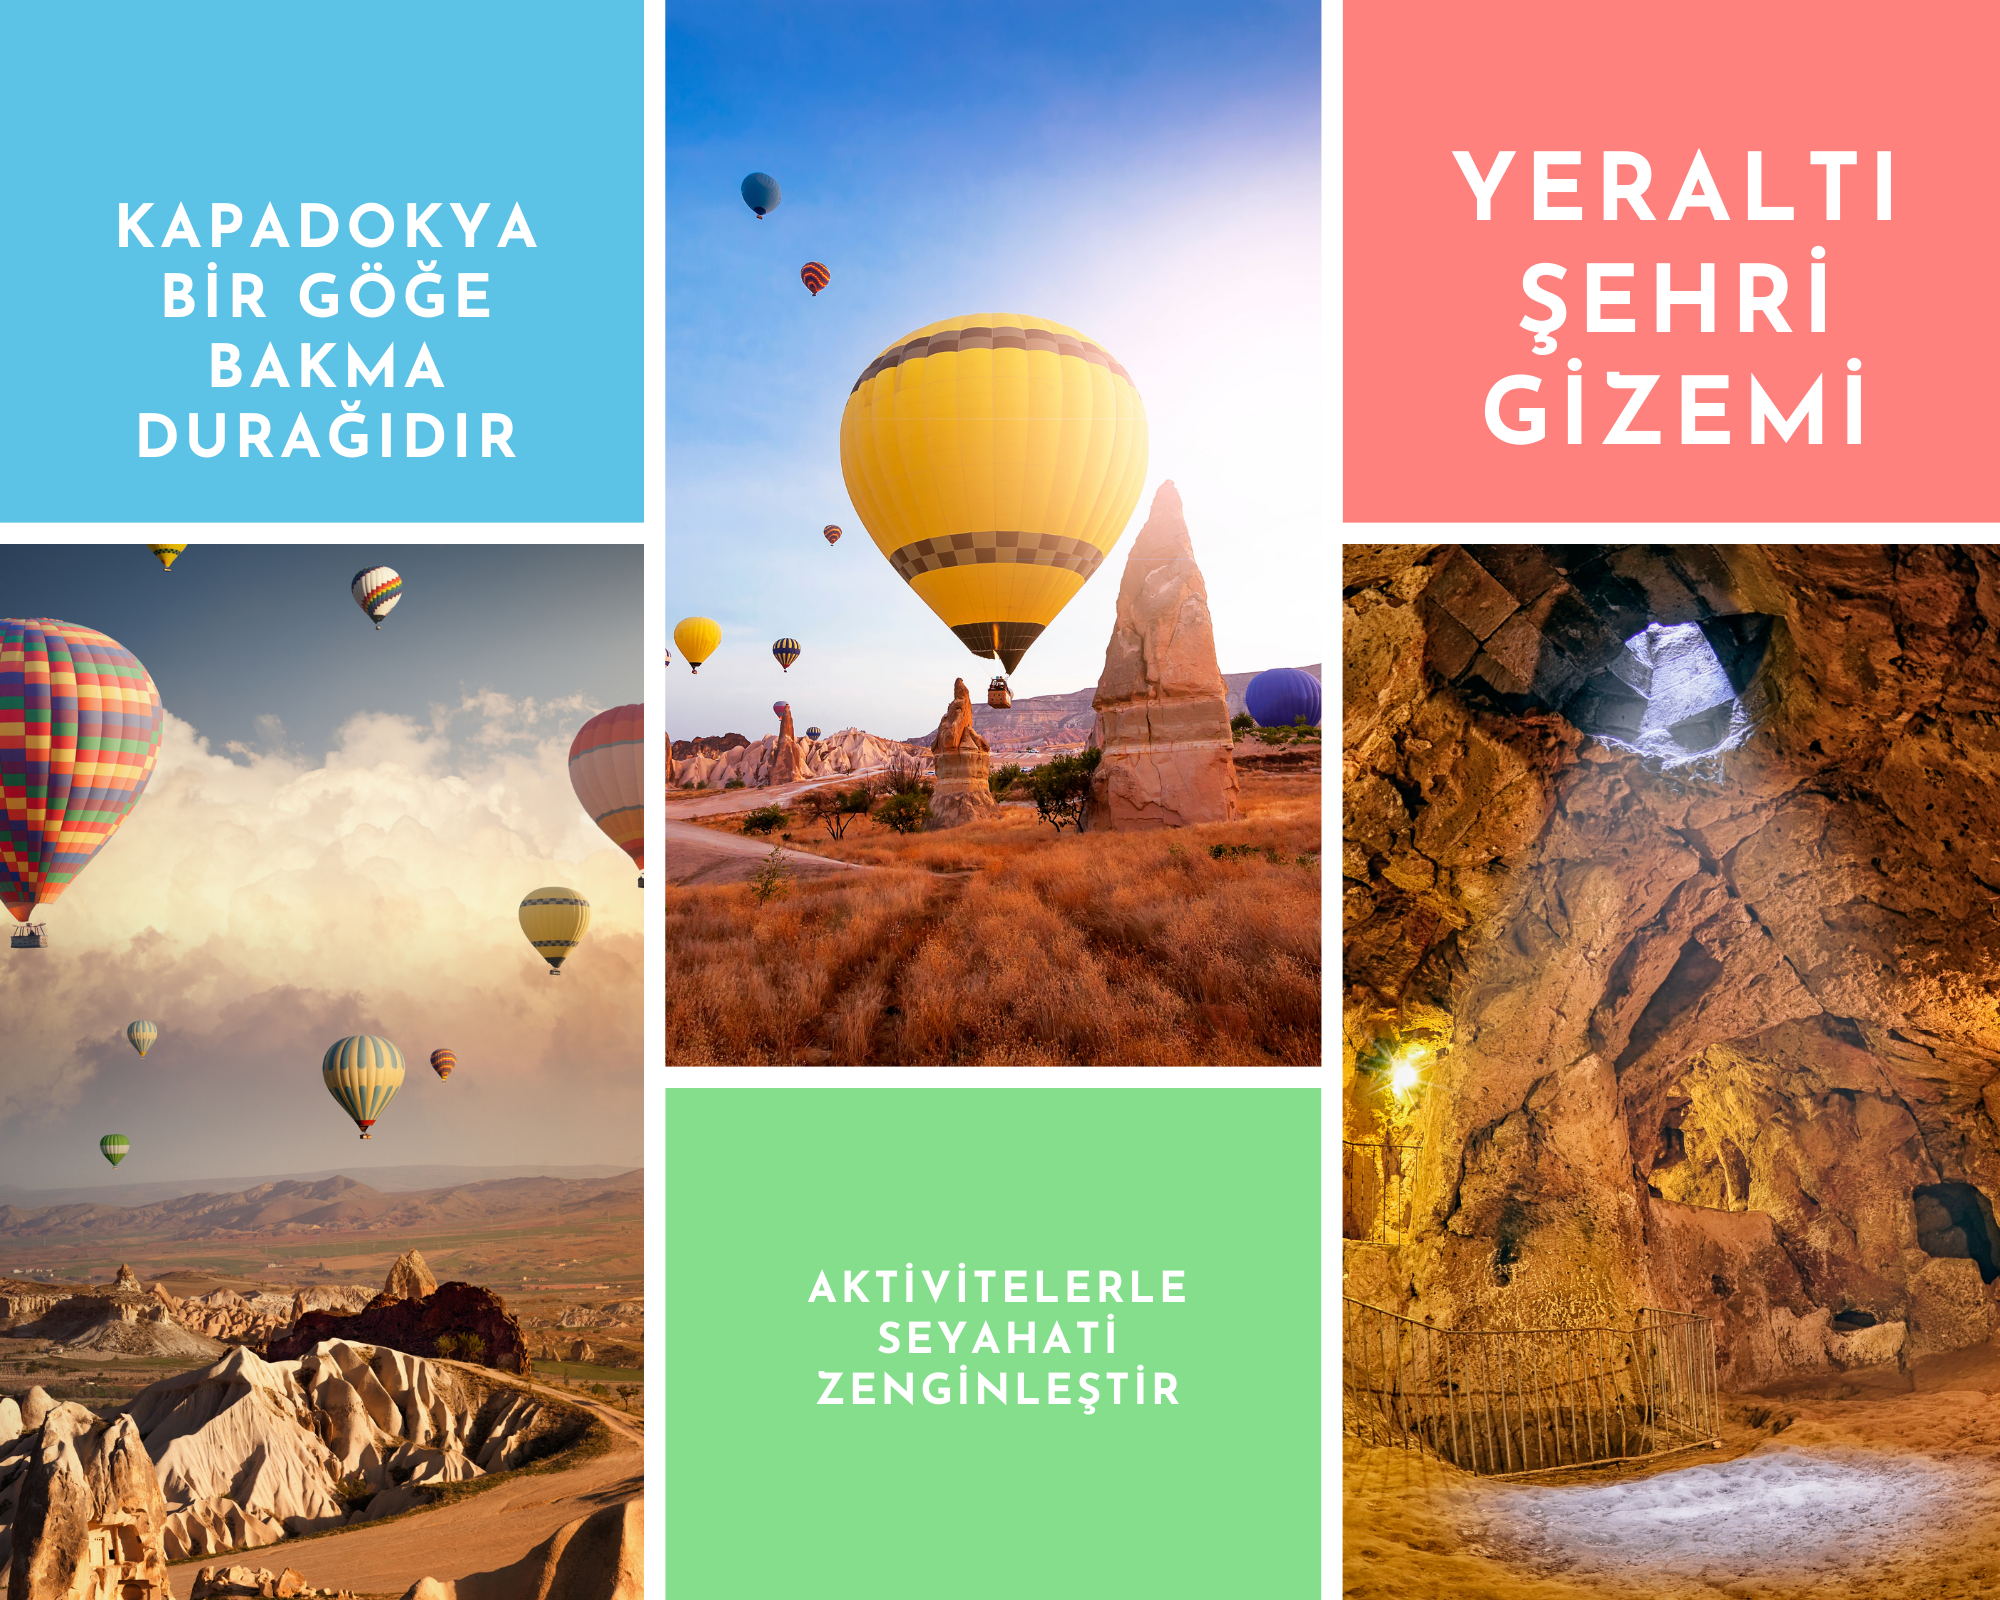 Cappadocia Balloon Tour Prices 2022